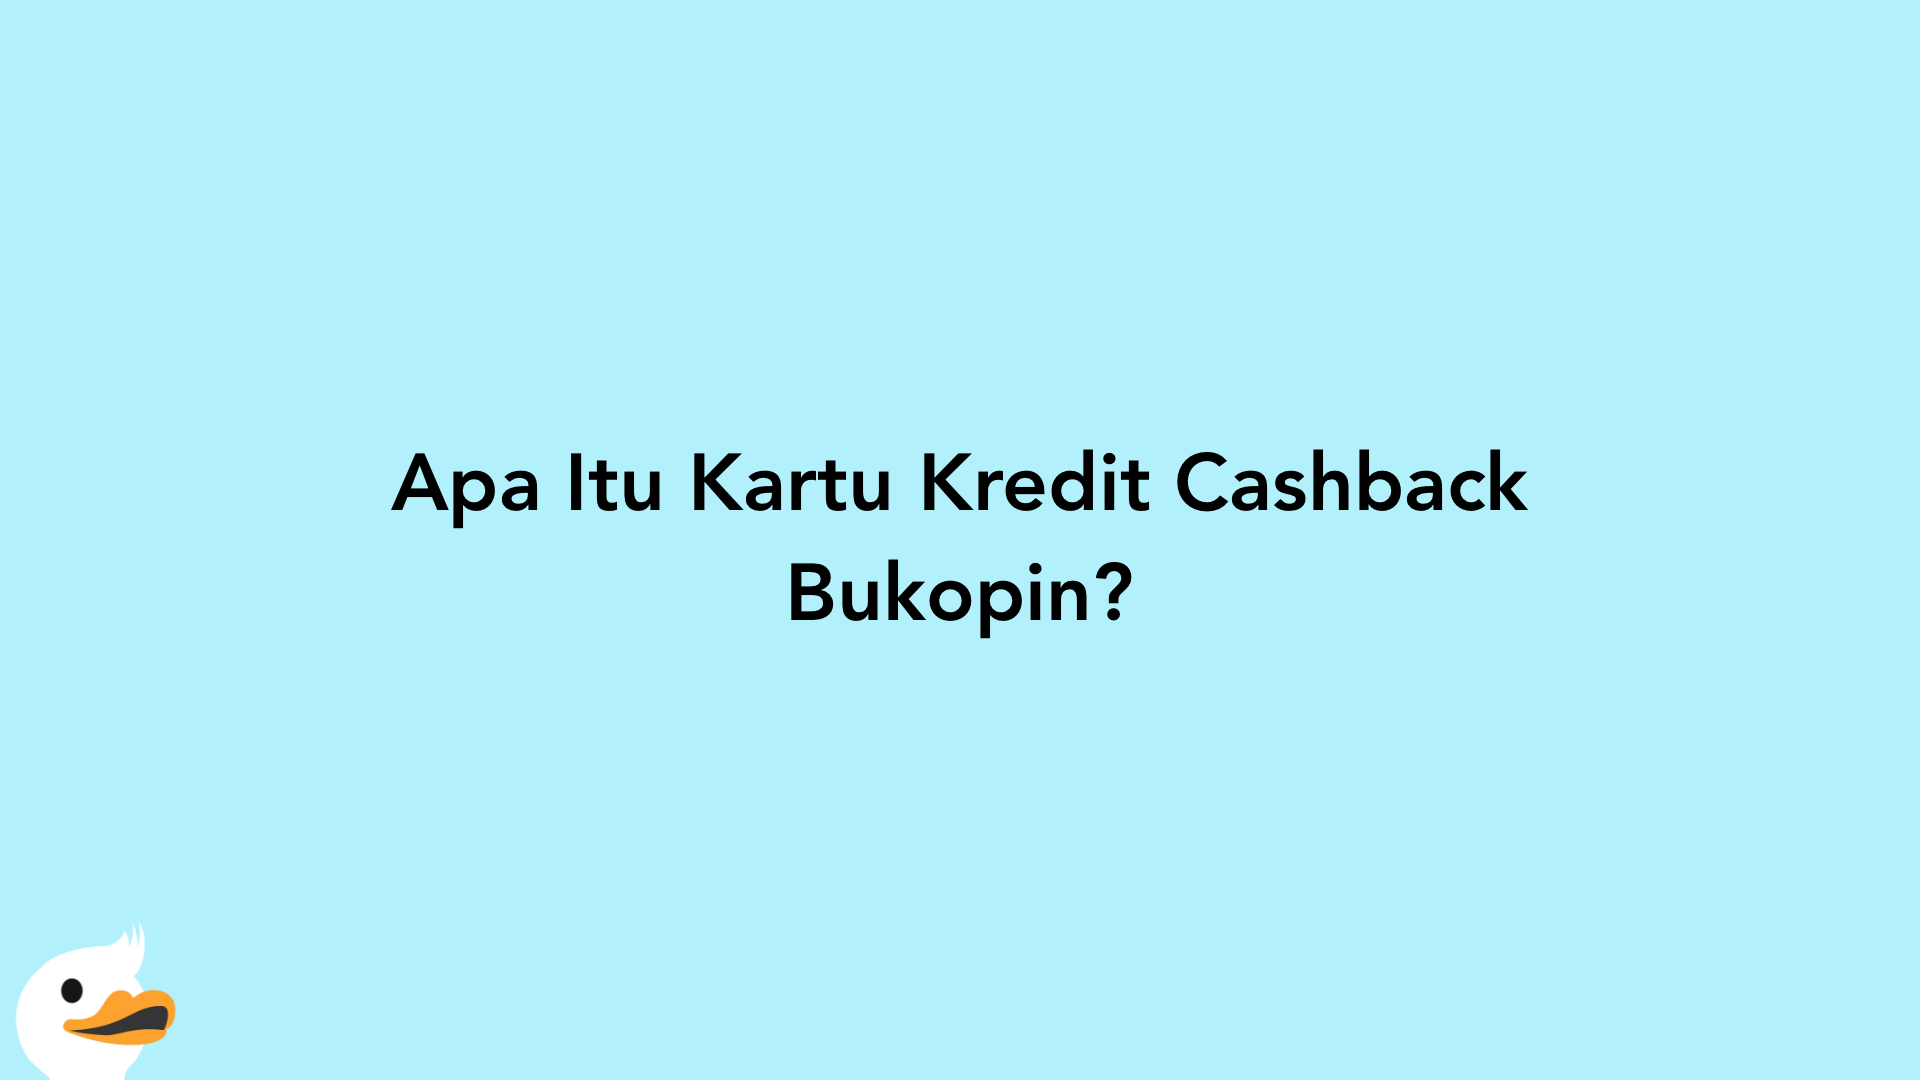 Apa Itu Kartu Kredit Cashback Bukopin?